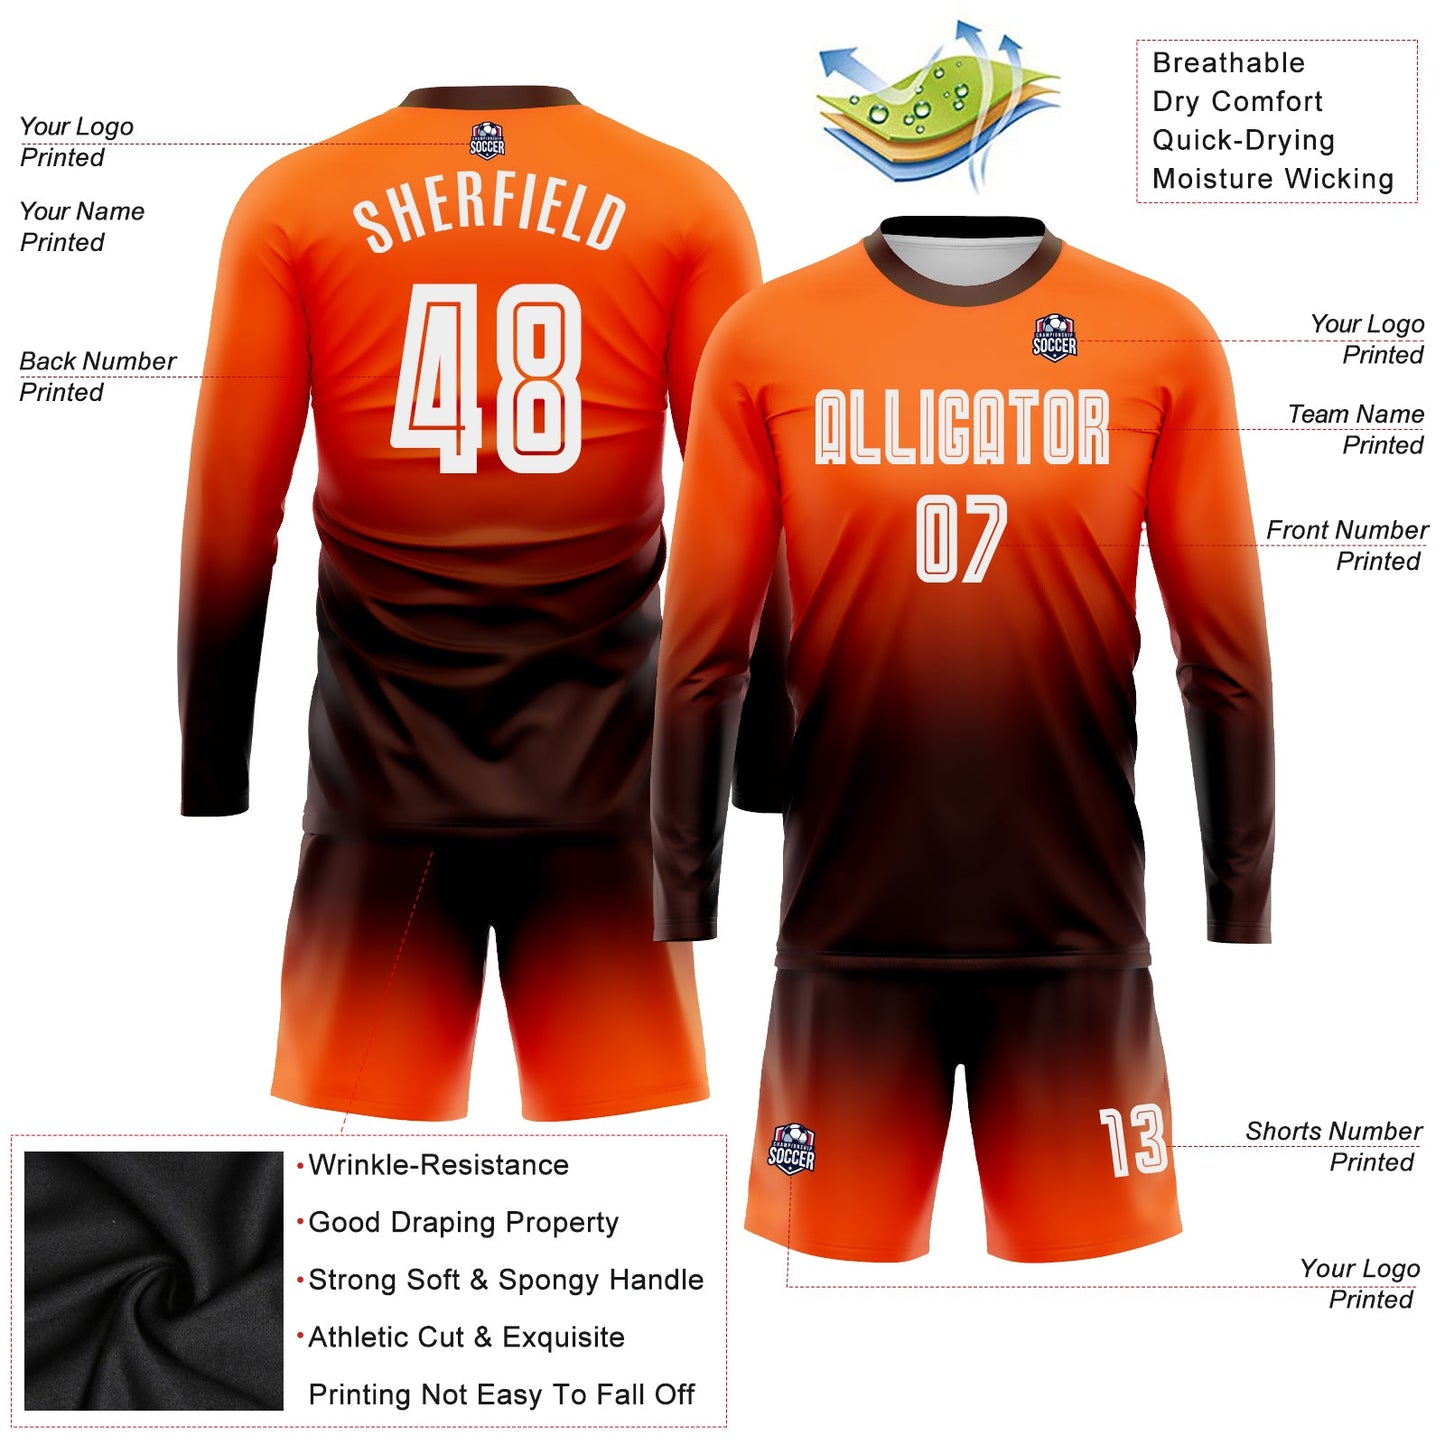 Maillot d'uniforme de football à manches longues, personnalisé, Orange, blanc et marron, fondu, à la mode, par Sublimation